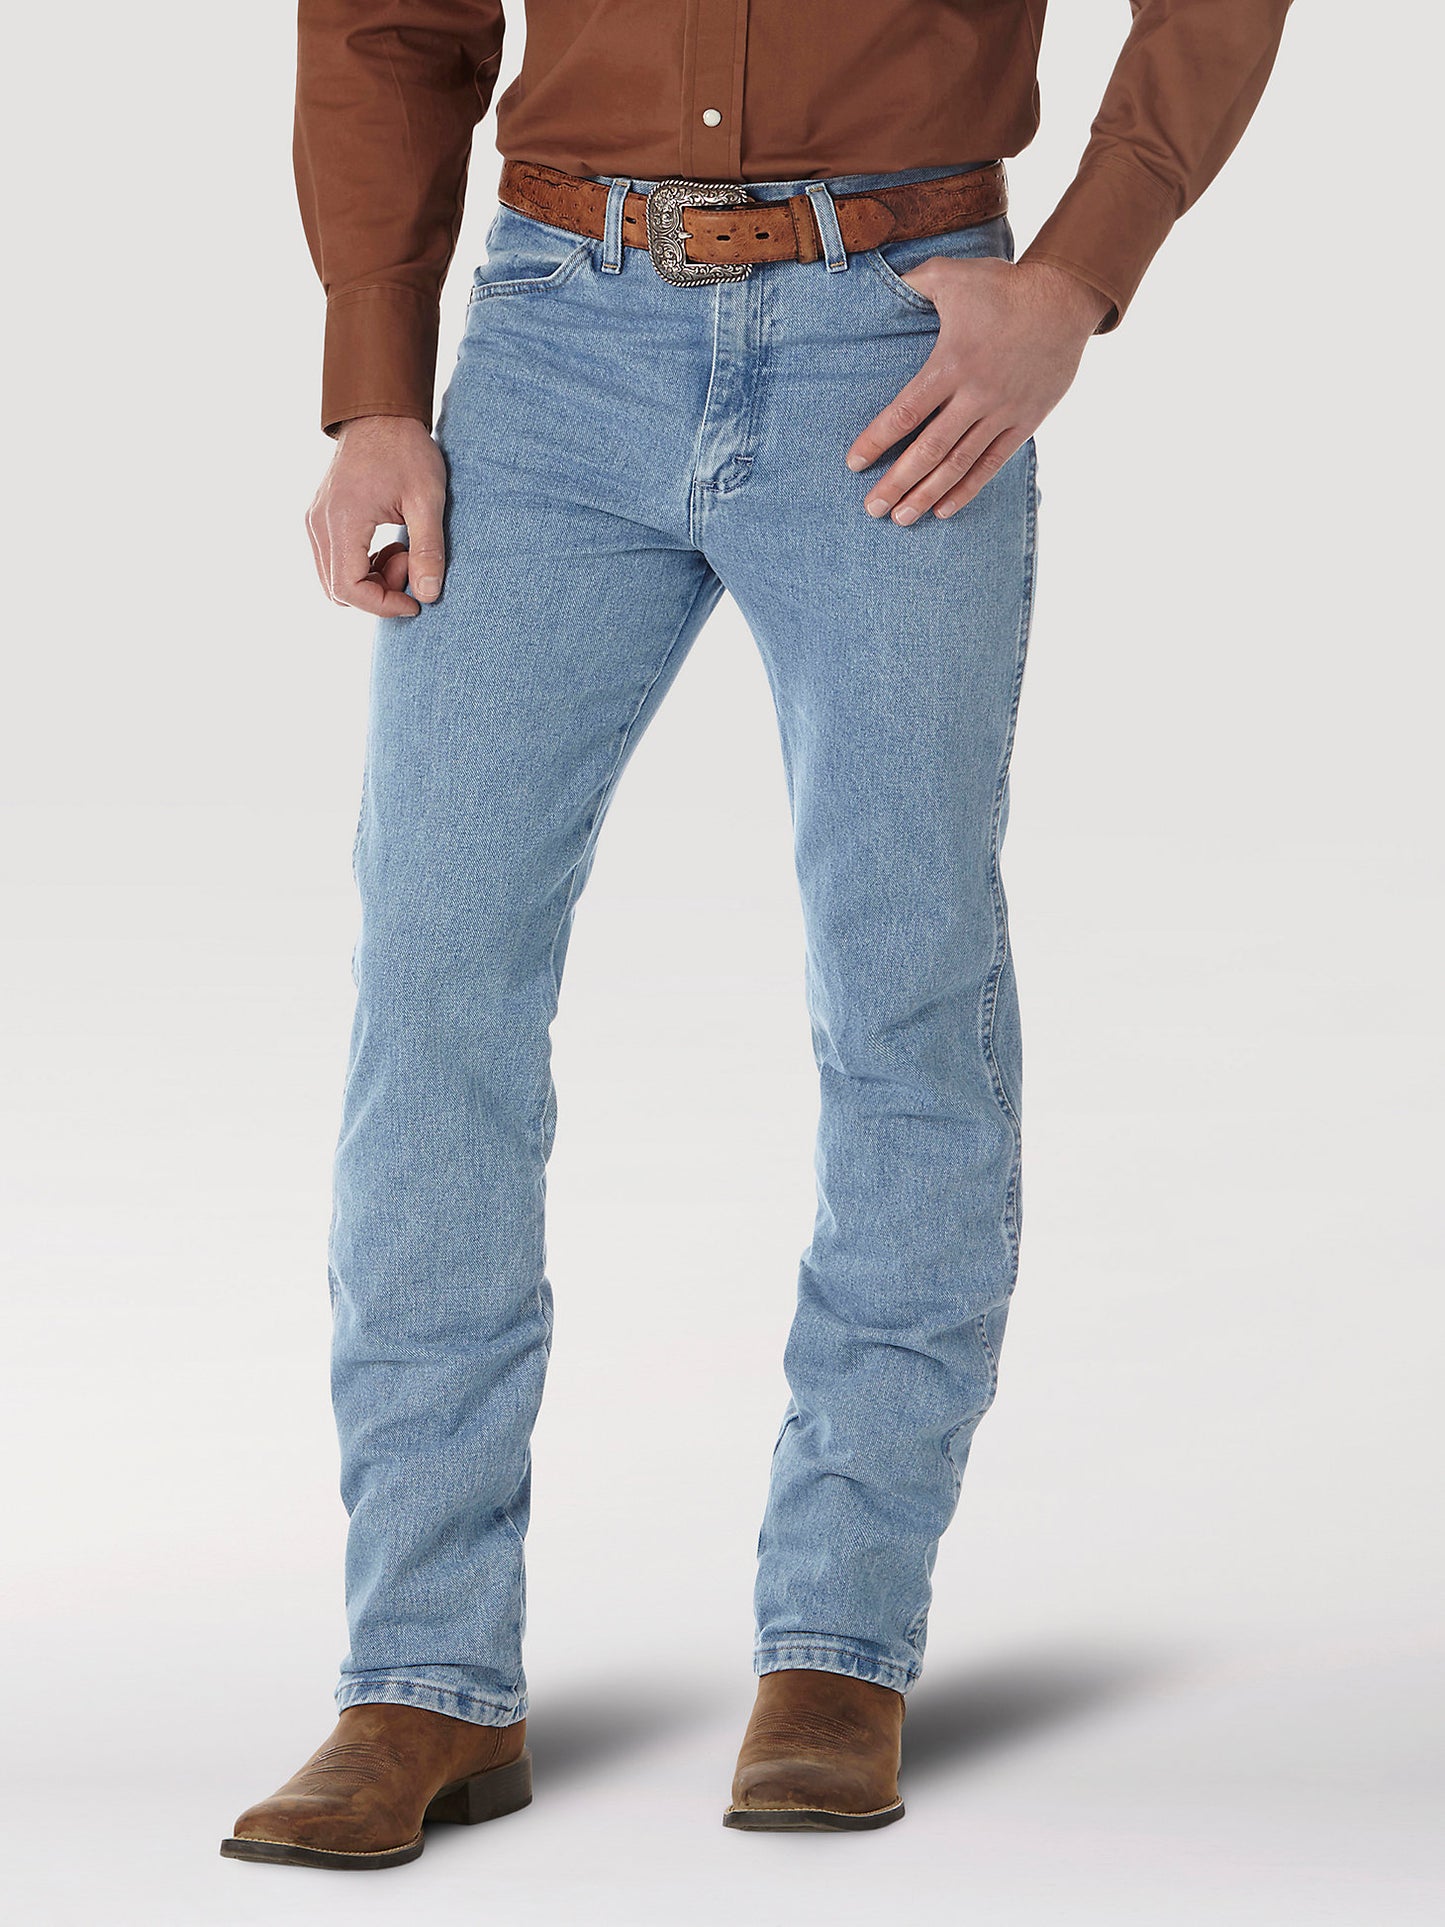 Wrangler Men's Cowboy Cut Slim Fit Jean in Antique Wash – Los Vaqueros ...